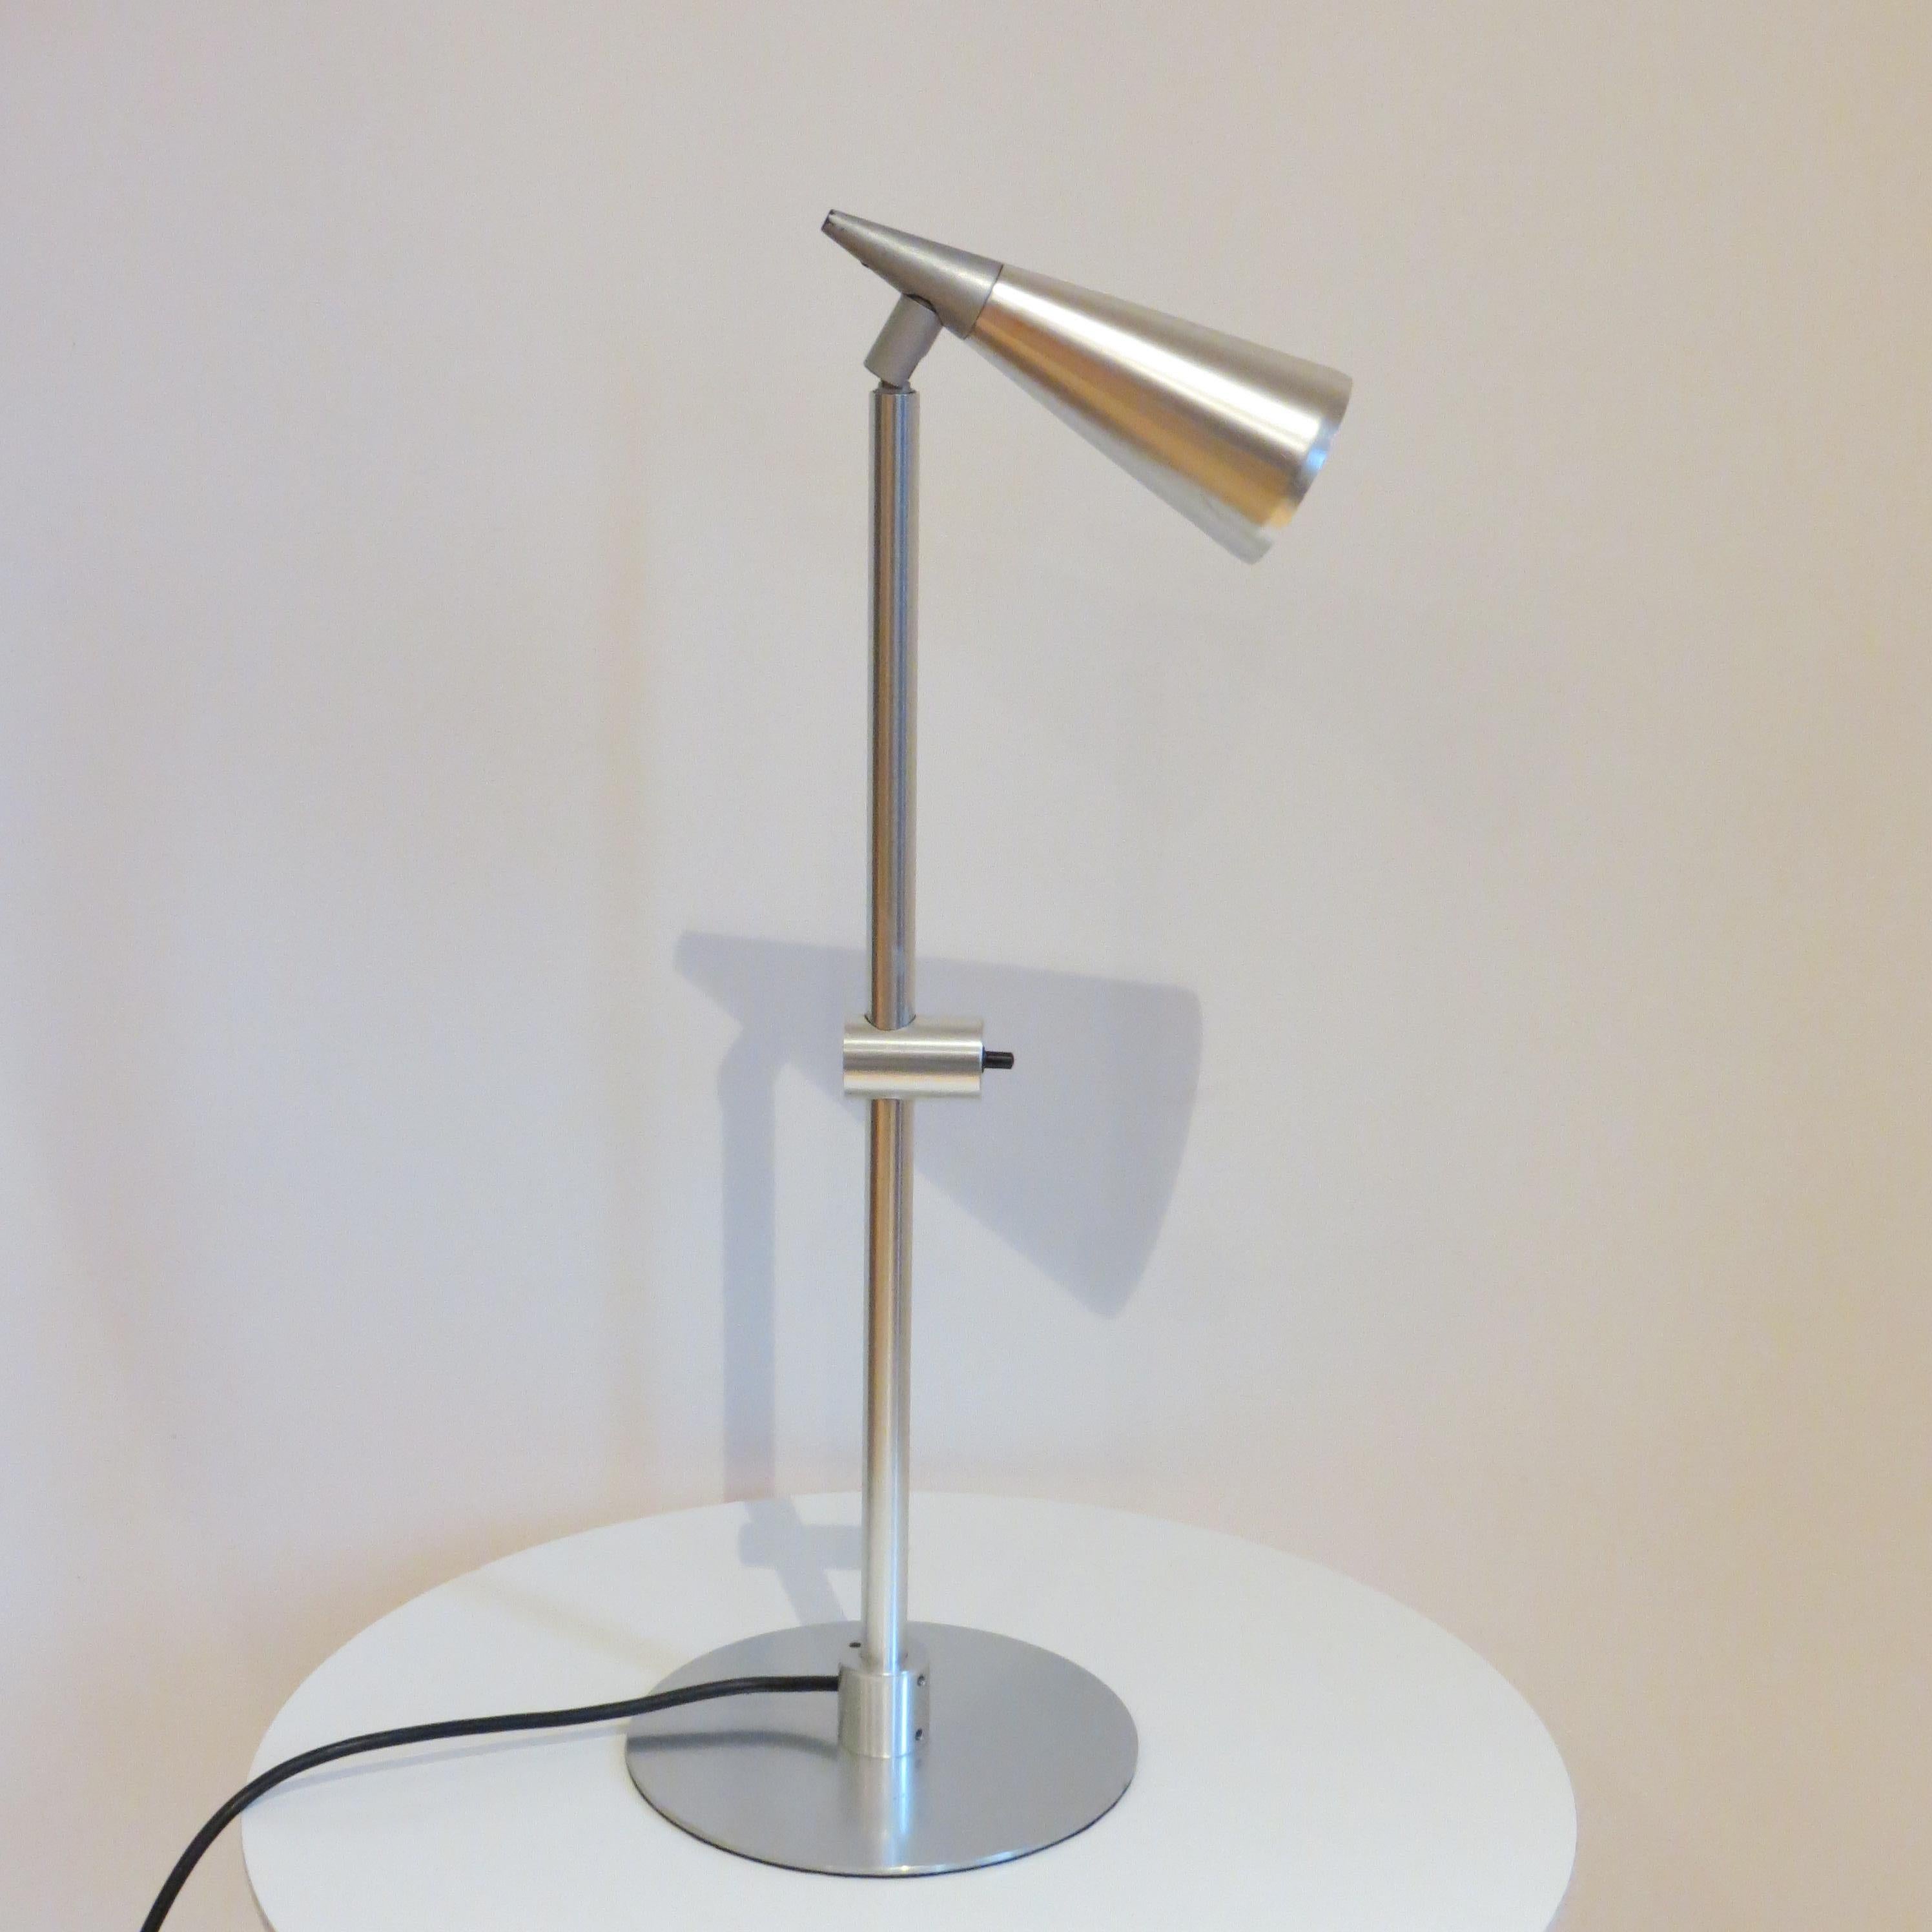 Lámpara de escritorio única muy rara  Se trata de un prototipo de lámpara -una pieza única- diseñada por Peter Nelson y fabricada por Architectural Lighting Ltd.  
Una lámpara bonita, de muy buena calidad y bien diseñada, fabricada en aluminio con